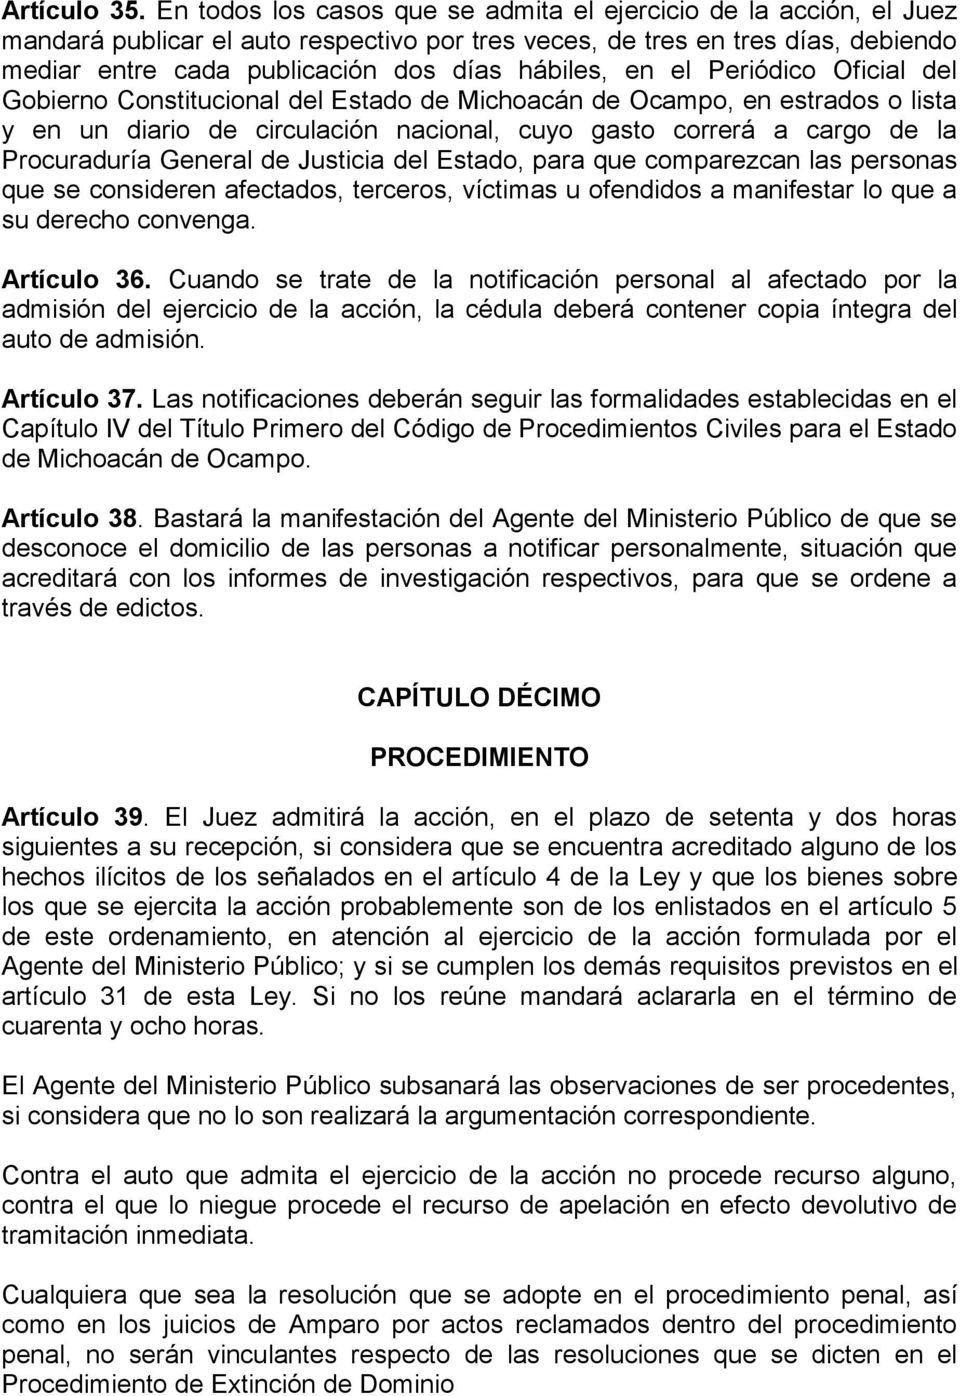 en el Periódico Oficial del Gobierno Constitucional del Estado de Michoacán de Ocampo, en estrados o lista y en un diario de circulación nacional, cuyo gasto correrá a cargo de la Procuraduría